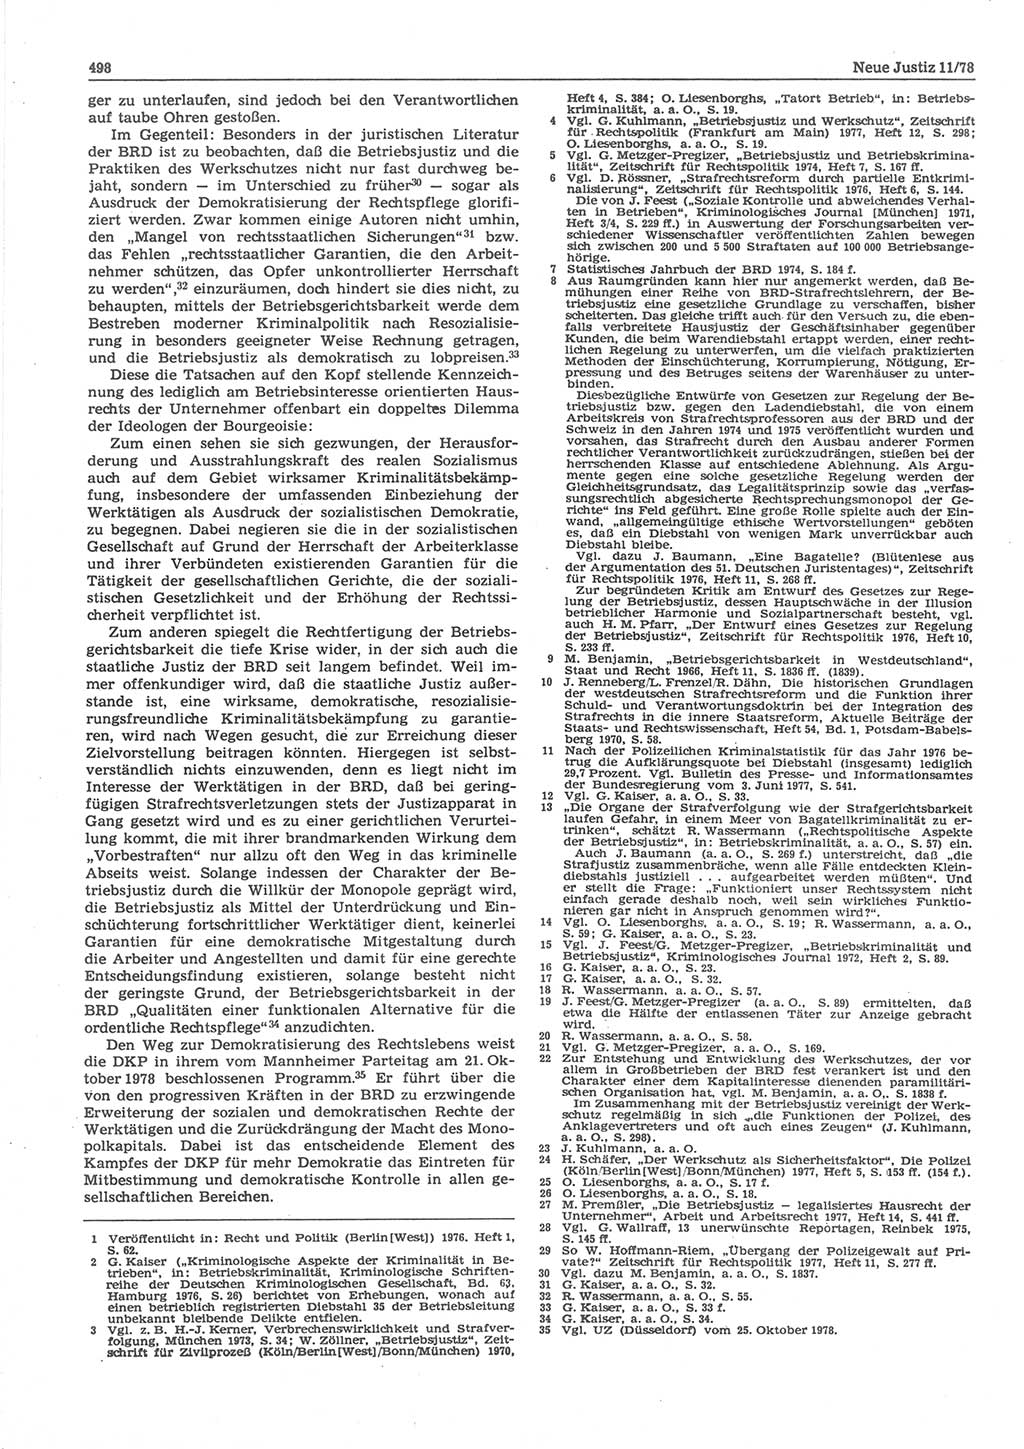 Neue Justiz (NJ), Zeitschrift für sozialistisches Recht und Gesetzlichkeit [Deutsche Demokratische Republik (DDR)], 32. Jahrgang 1978, Seite 498 (NJ DDR 1978, S. 498)